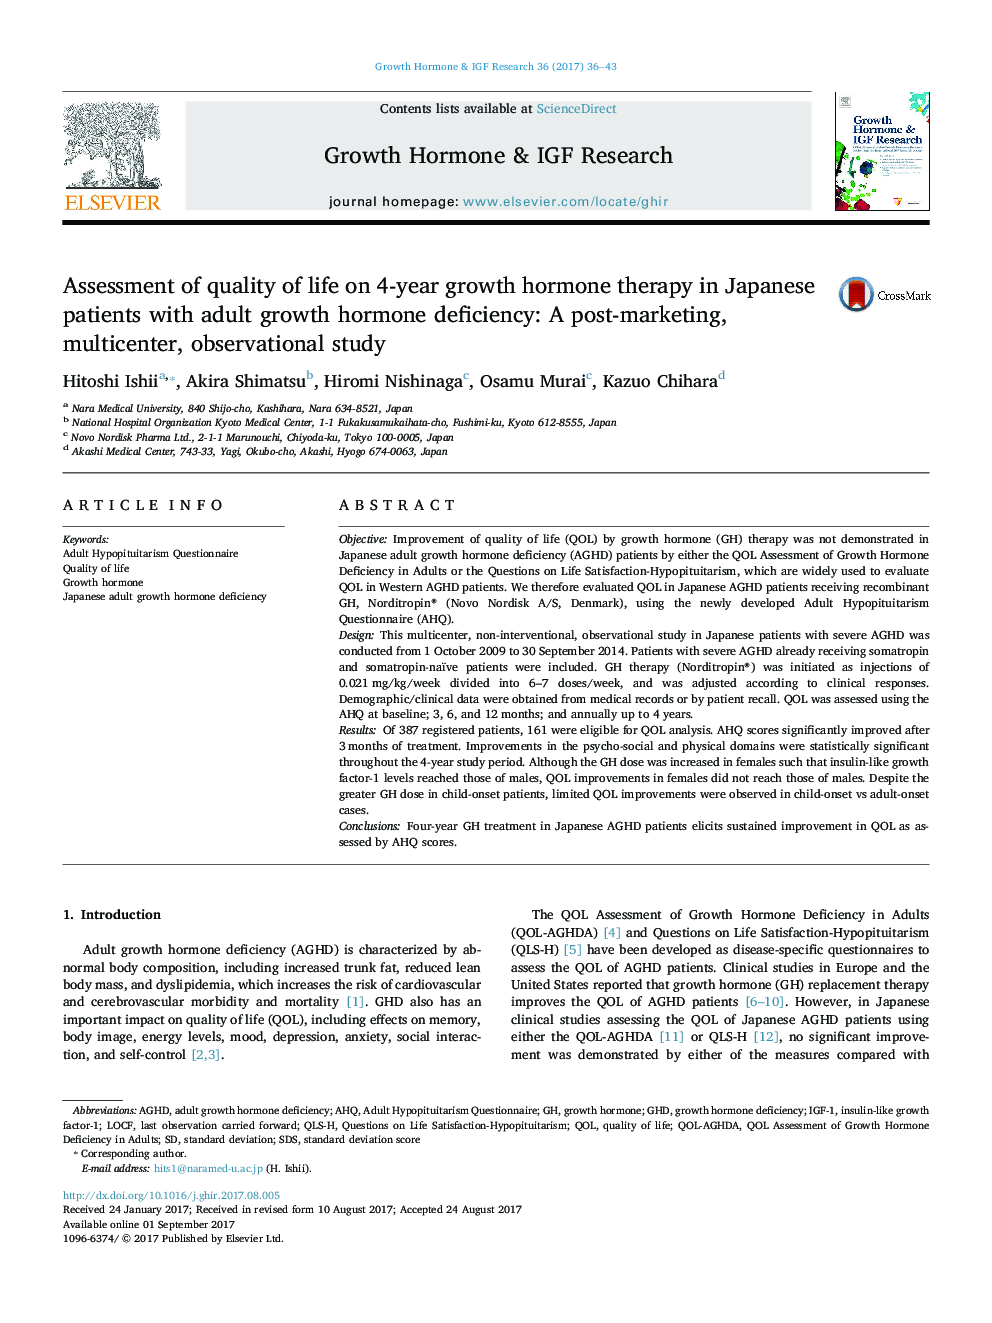 ارزیابی کیفیت زندگی در درمان 4 ساله هورمون رشد در بیماران ژاپنی با کمبود هورمون رشد بزرگسالان: یک مطالعه ی مشاهدات چند ساله پس از بازاریابی 